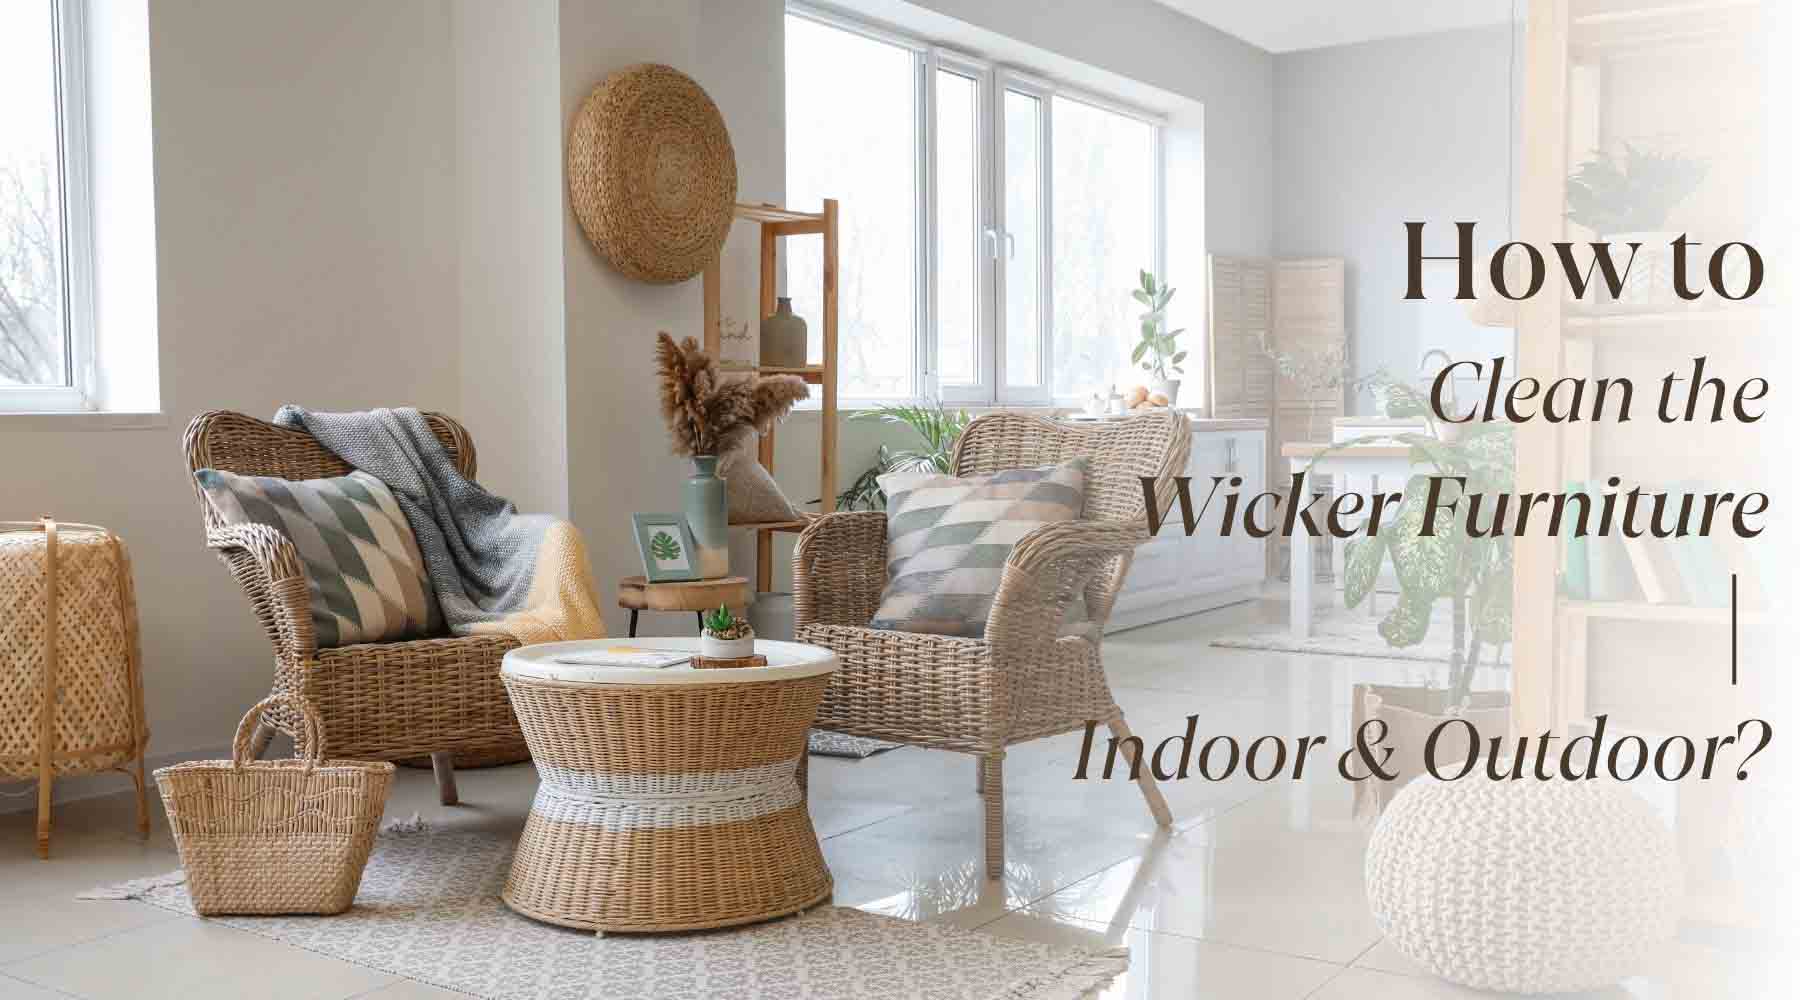 How to Clean Wicker Furniture Indoor & Outdoor: Quick and Easy Methods